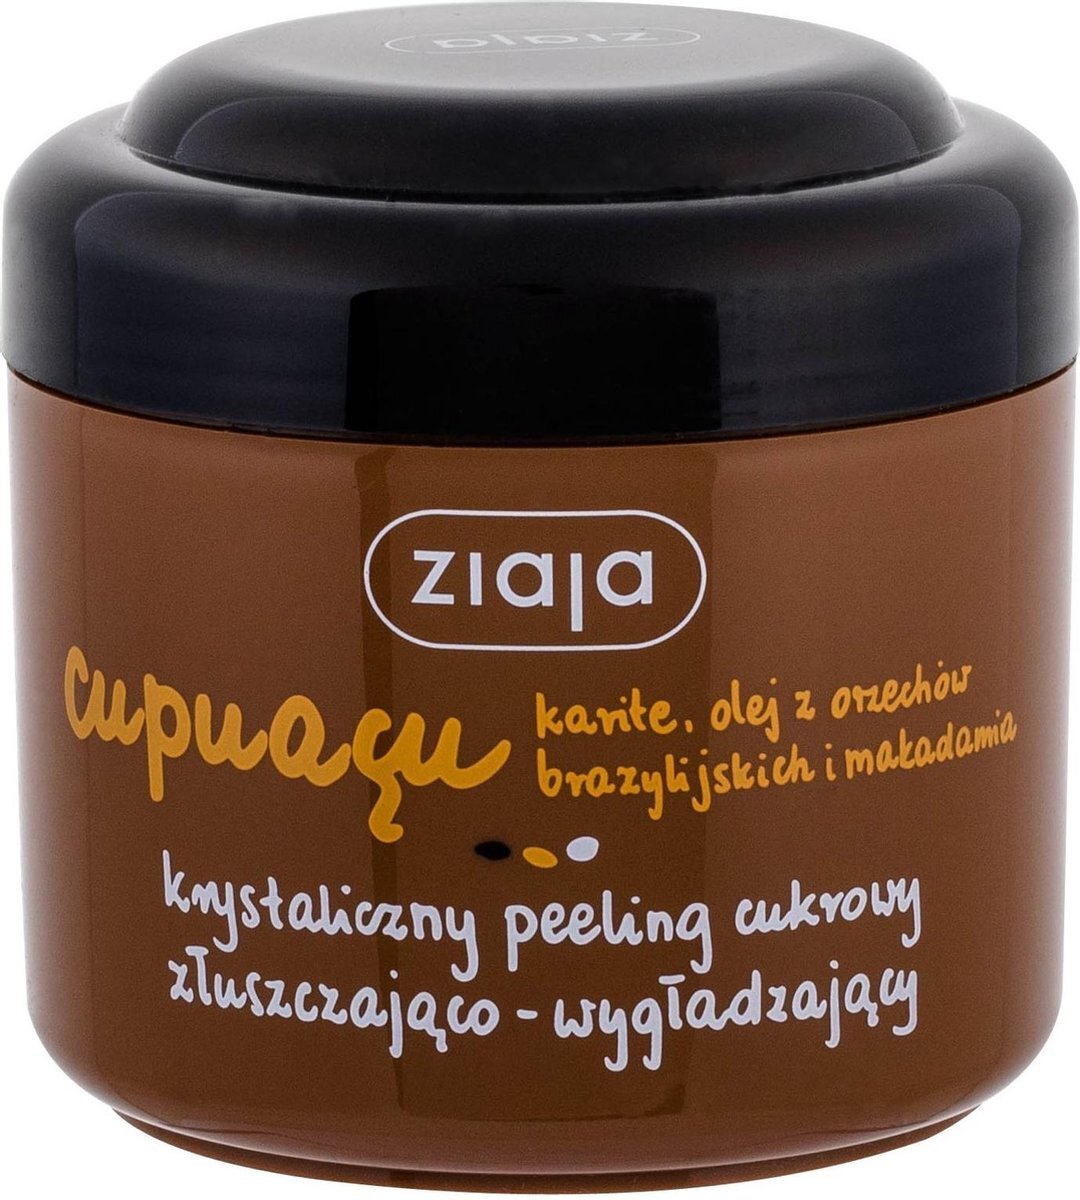 Ziaja Cupuacu Body Peeling - Body Peeling 200ml